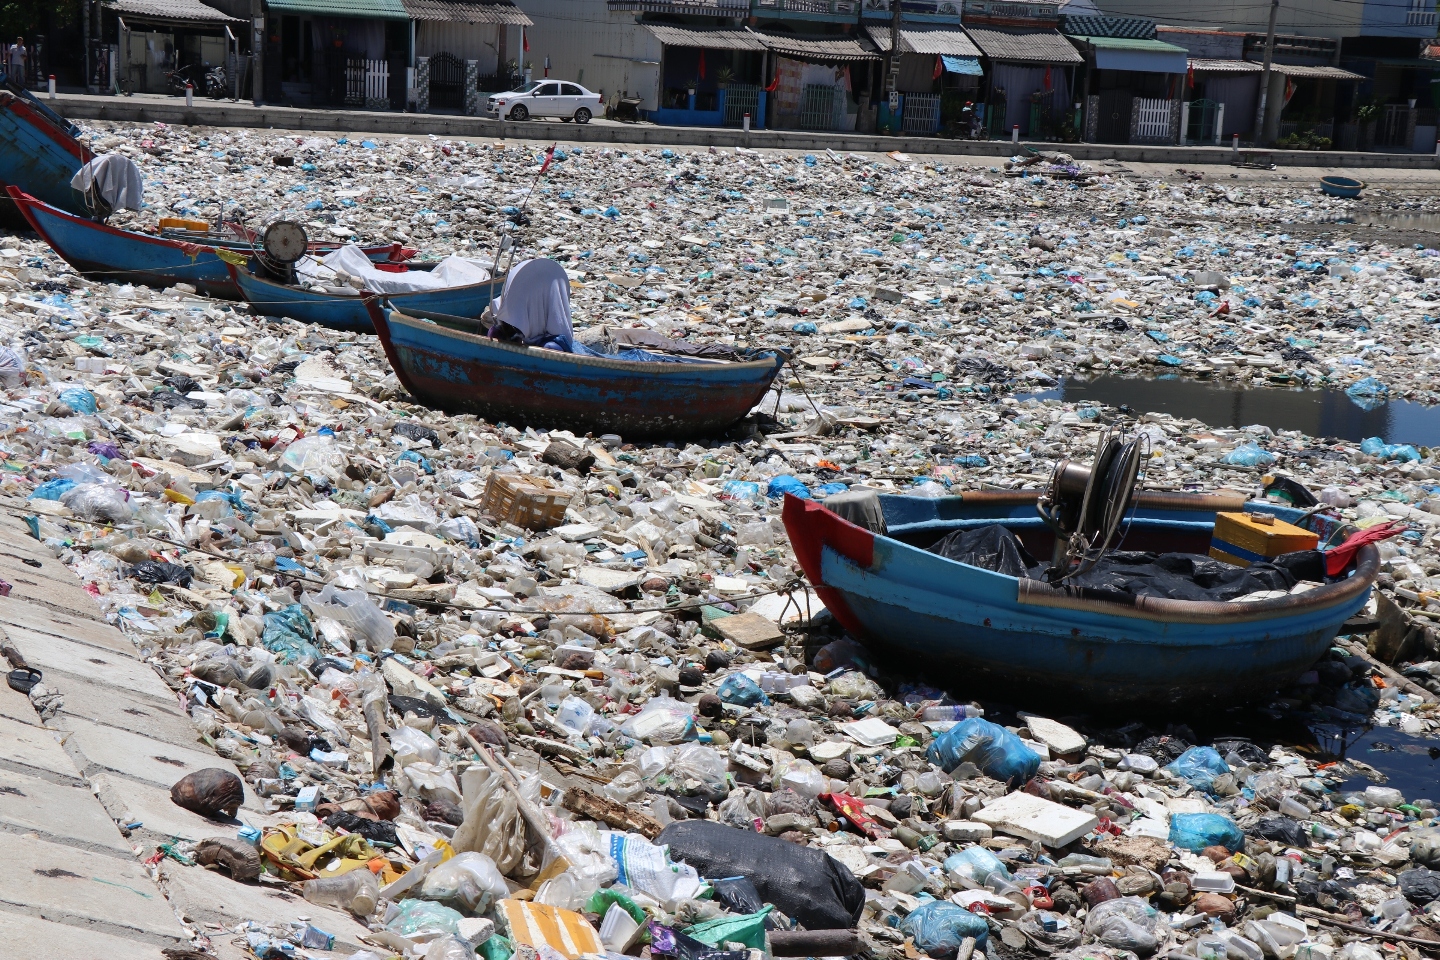 Chính quyền địa phương và người dân bất lực trong việc xử lý hàng chục tấn rác thải ứ đọng trên đầm nước mặn Sa Huỳnh. Ảnh: Ngọc Viên